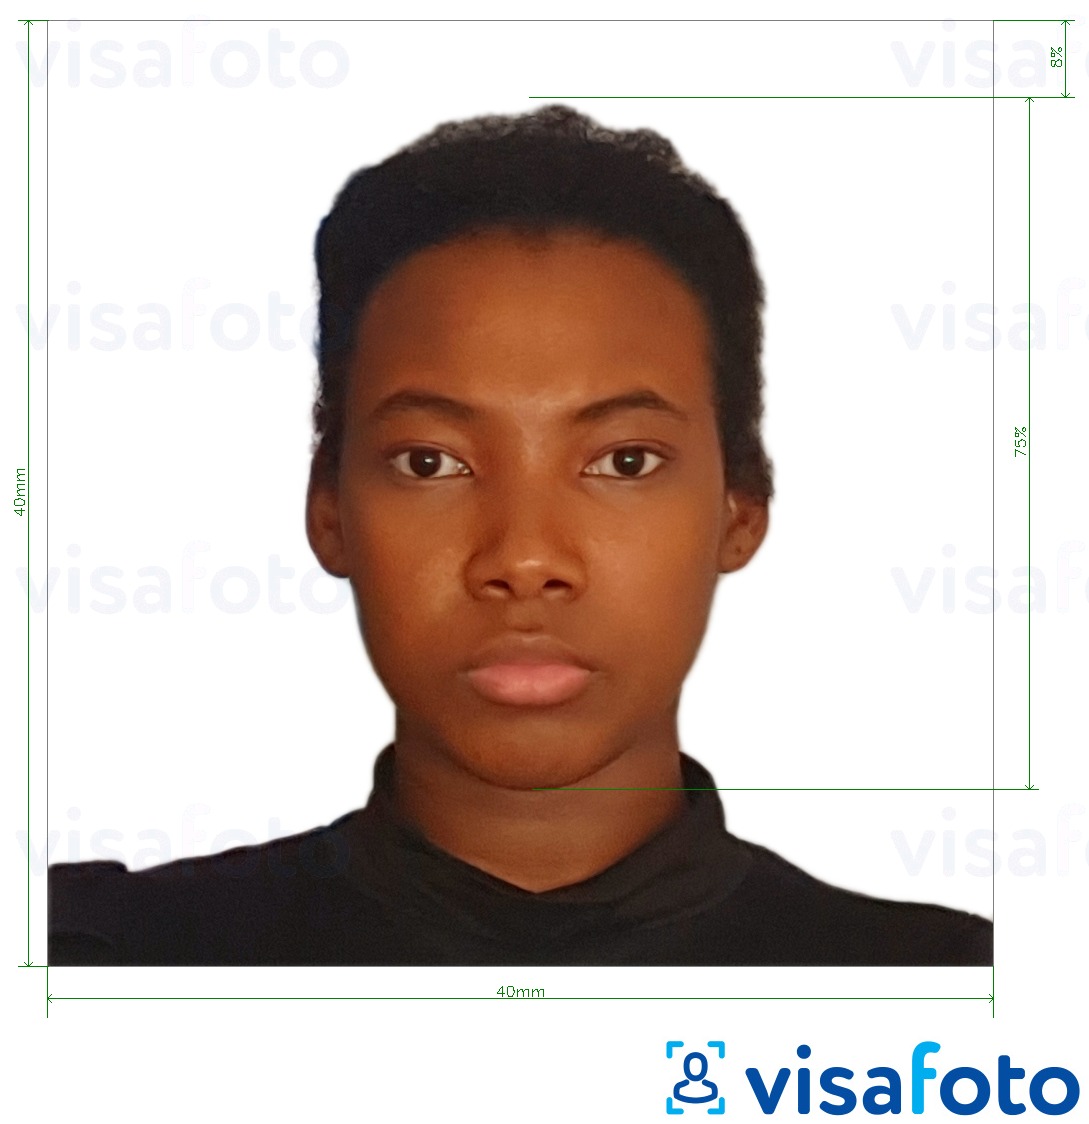 Primjer fotografije za Kamerunska putovnica 4x4 cm (40x40 mm) s točno određenom veličinom